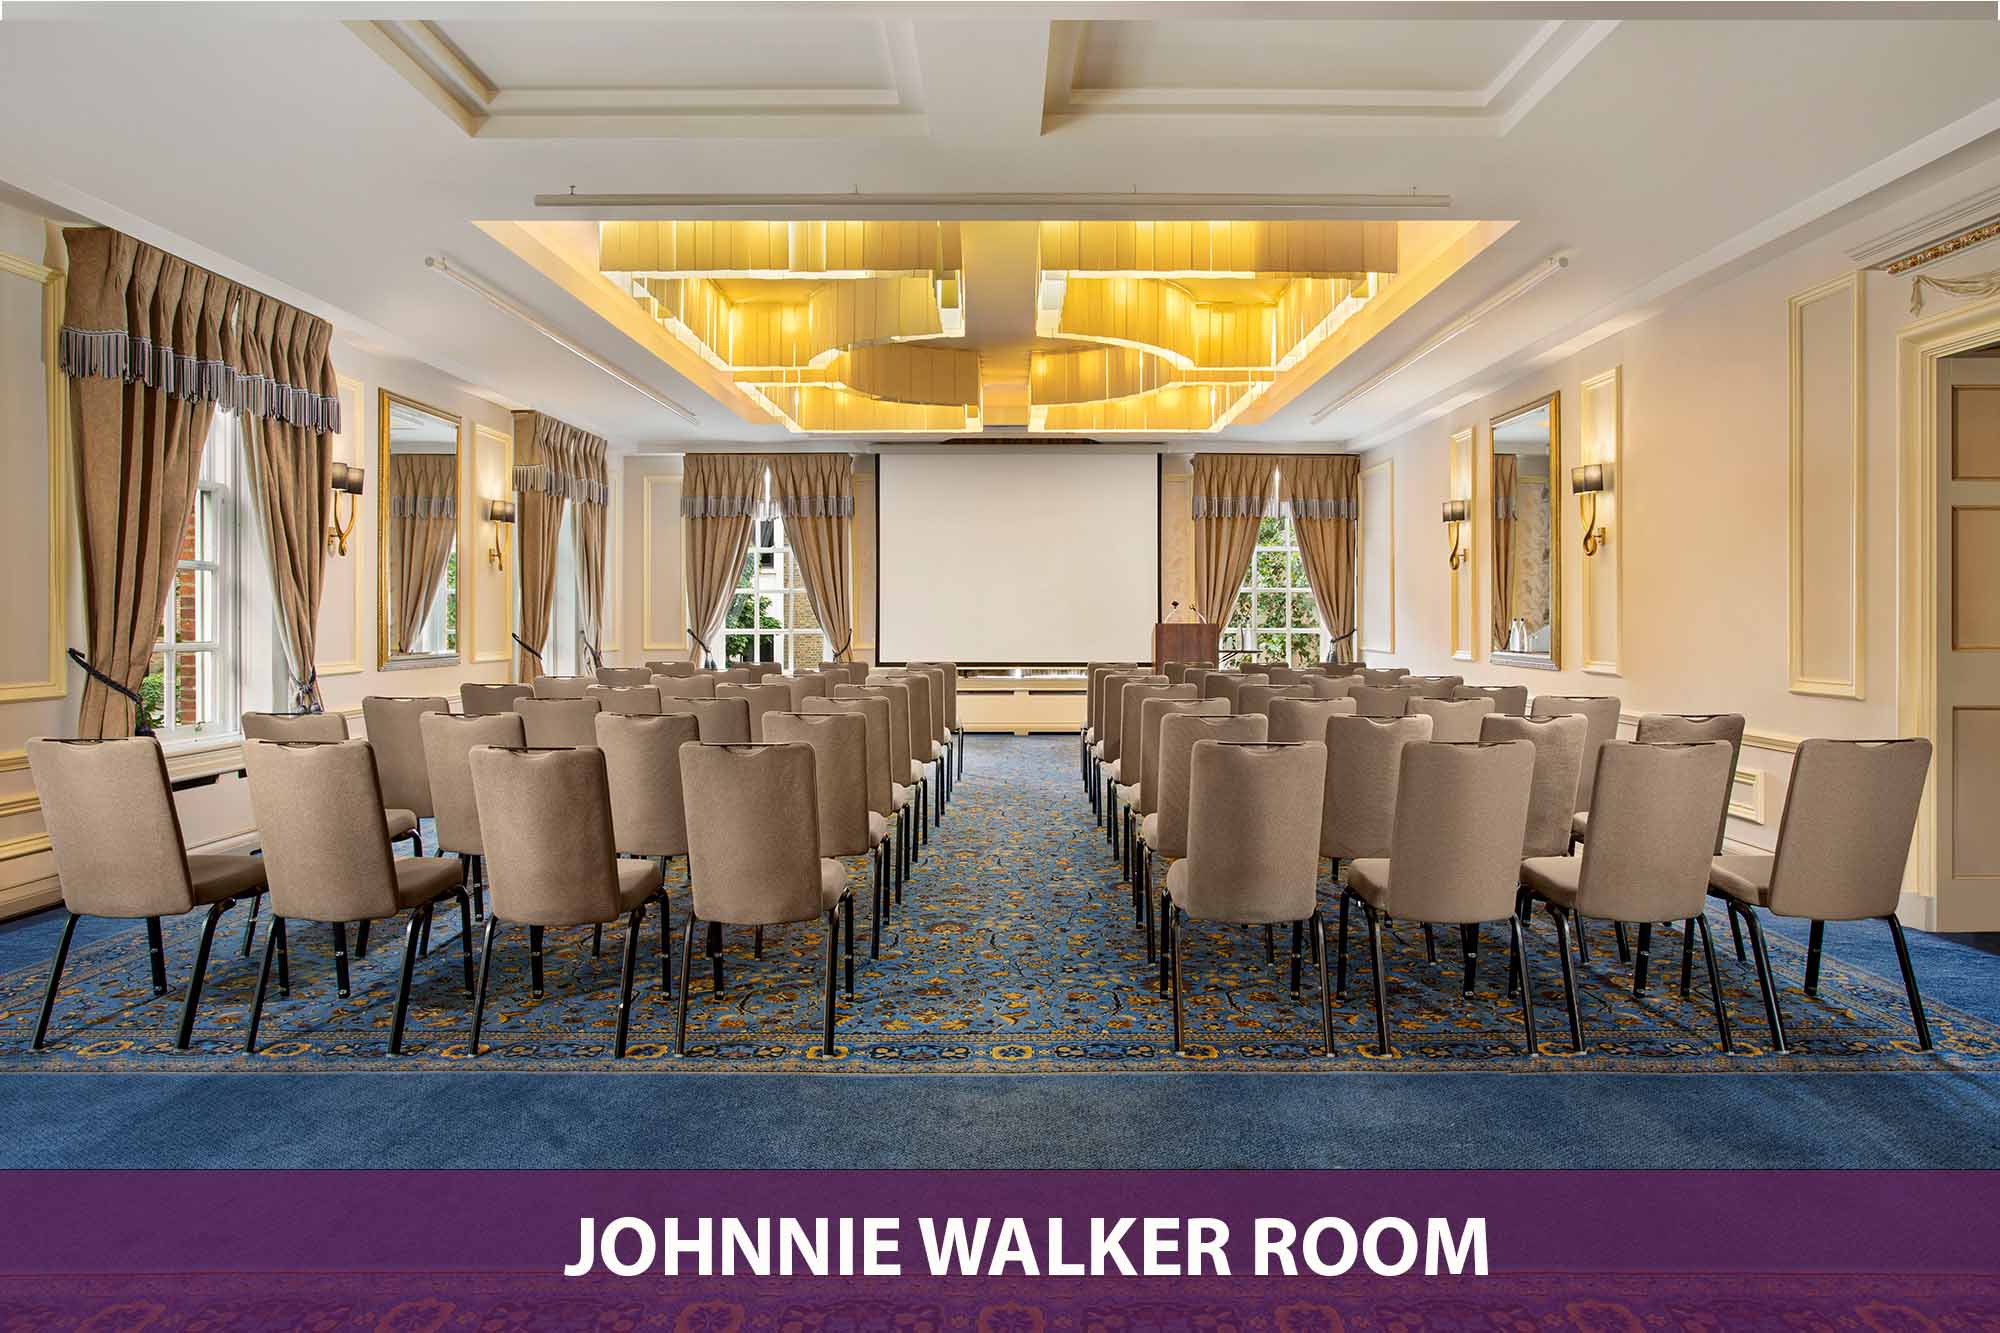 Johnnie Walker Room_Theatre Style